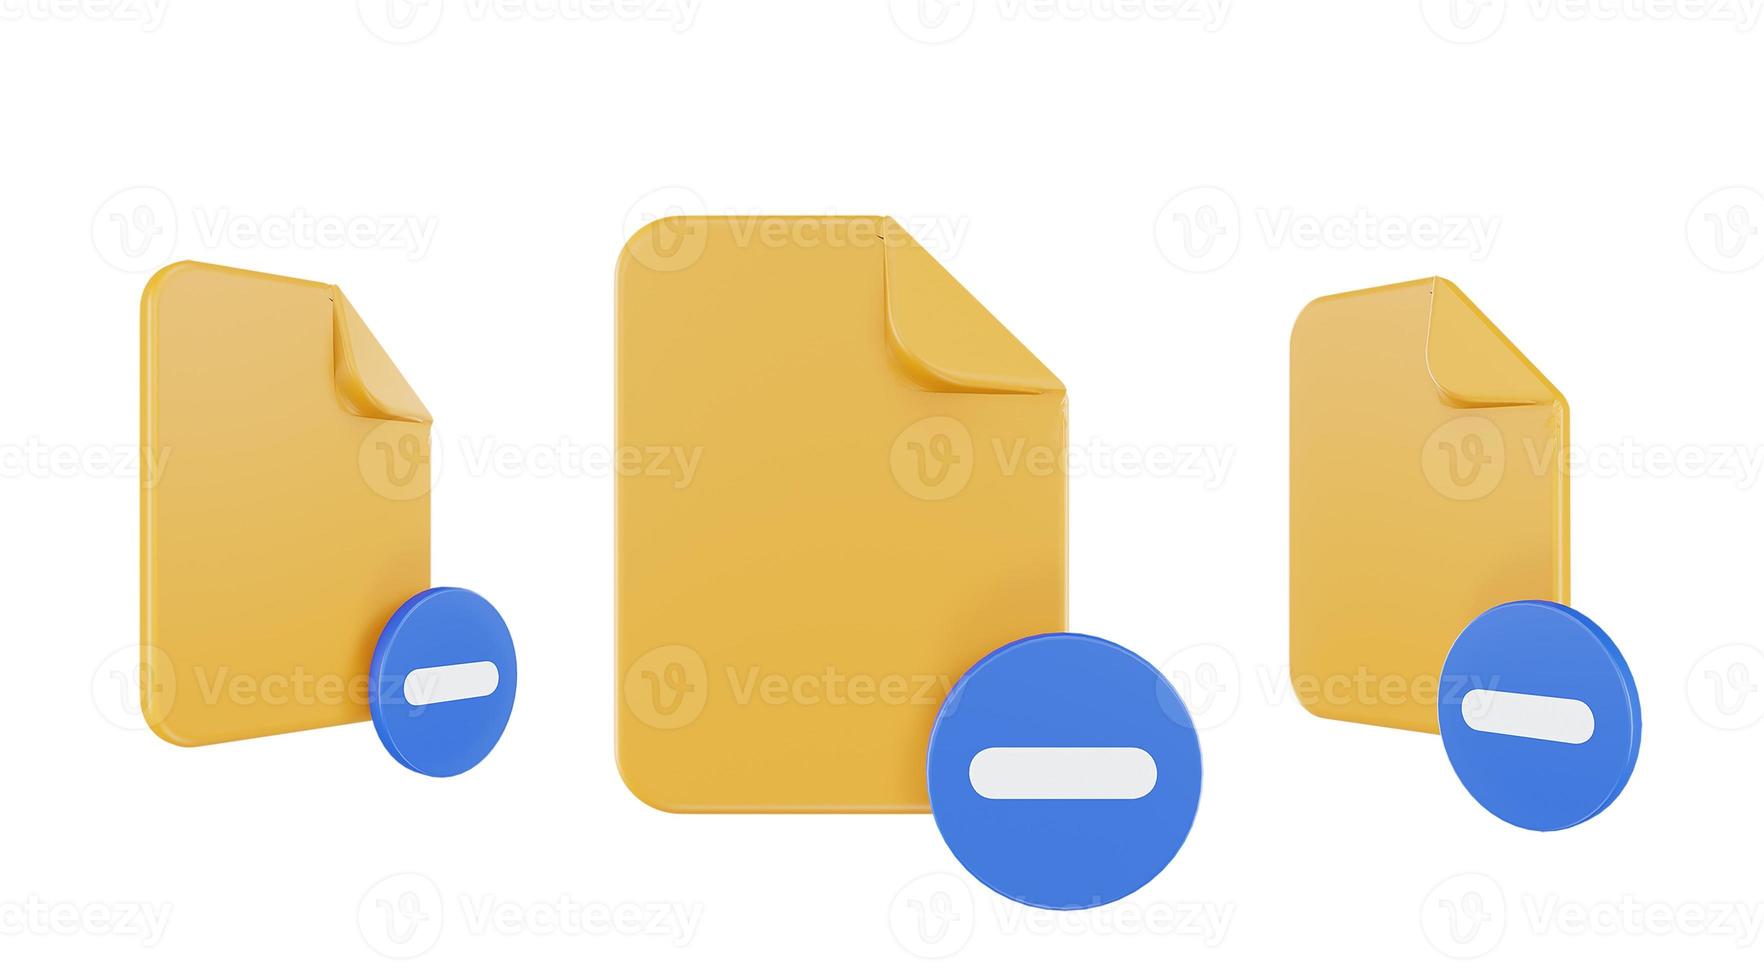 ícone de subtração de arquivo de renderização 3D com papel de arquivo laranja e subtração azul foto